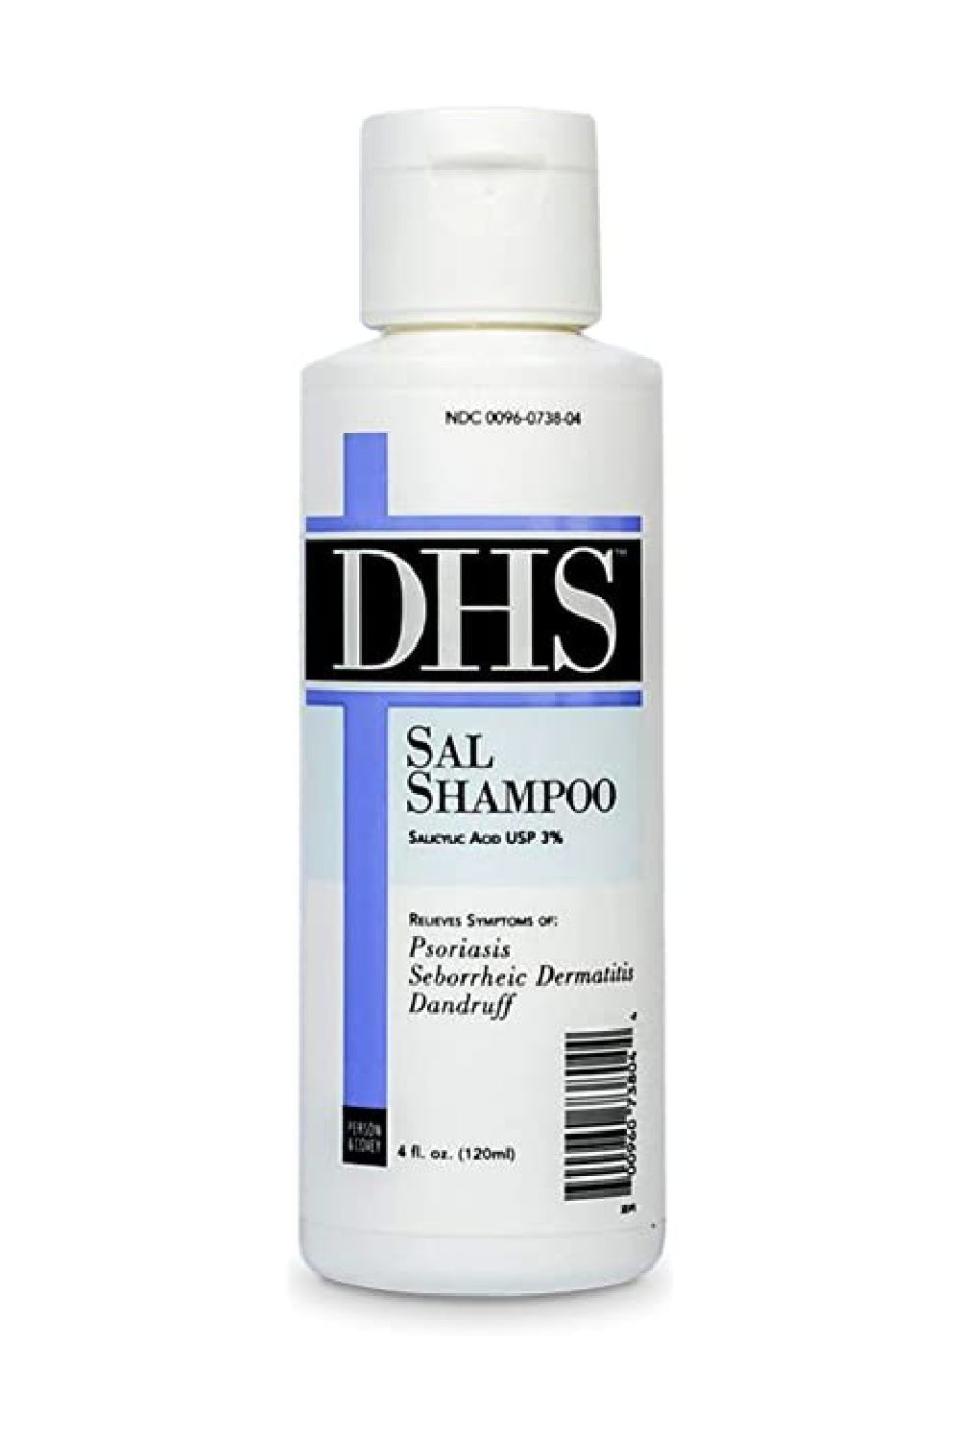 3) DHS SAL Shampoo